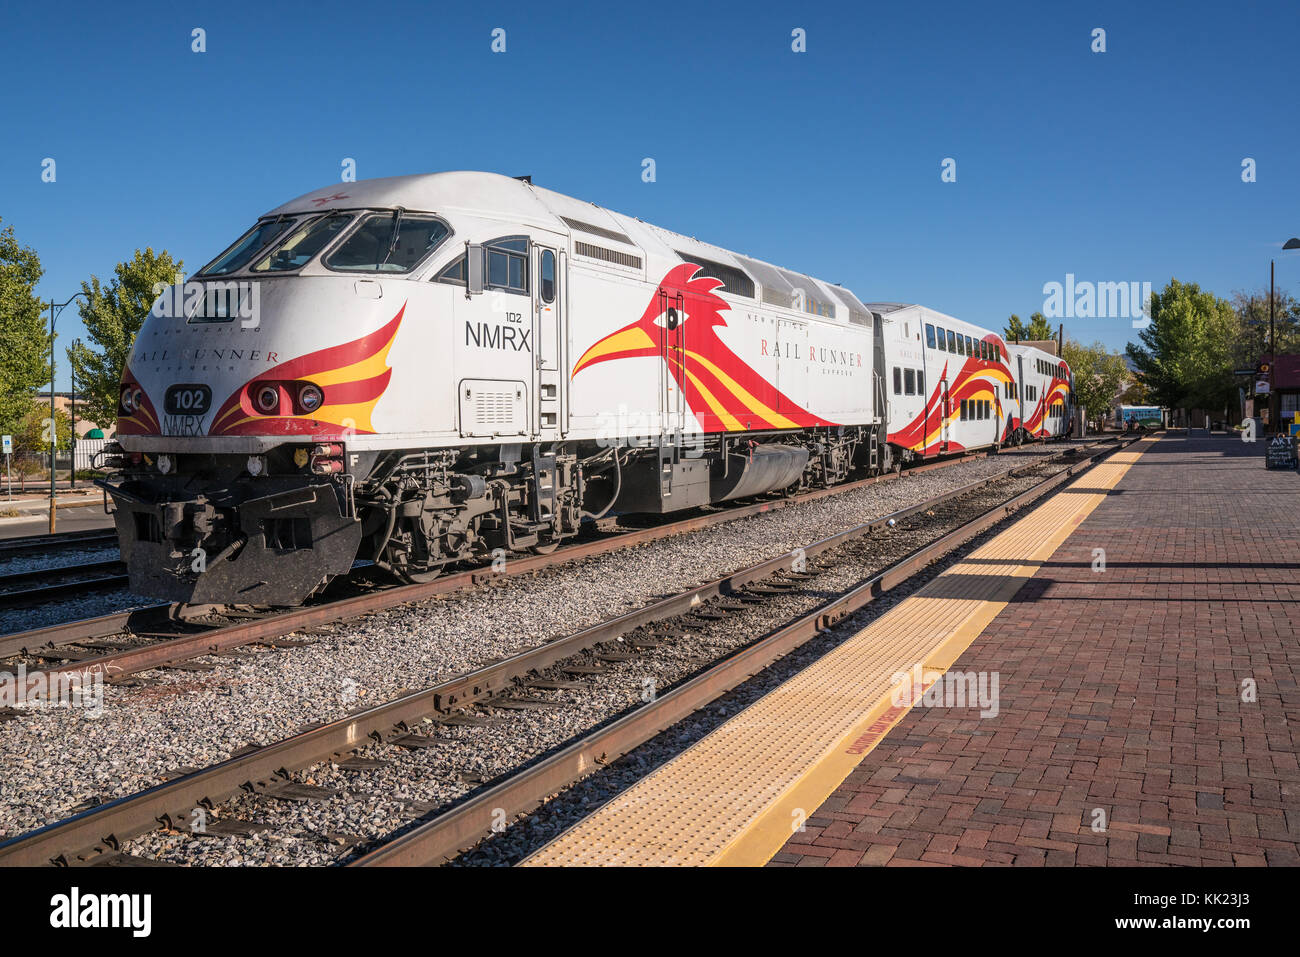 Santa Fe, NM - 13 octobre : nouveau mexique locomotive rail runner au Santa Fe gare le 13 octobre 2017 Banque D'Images